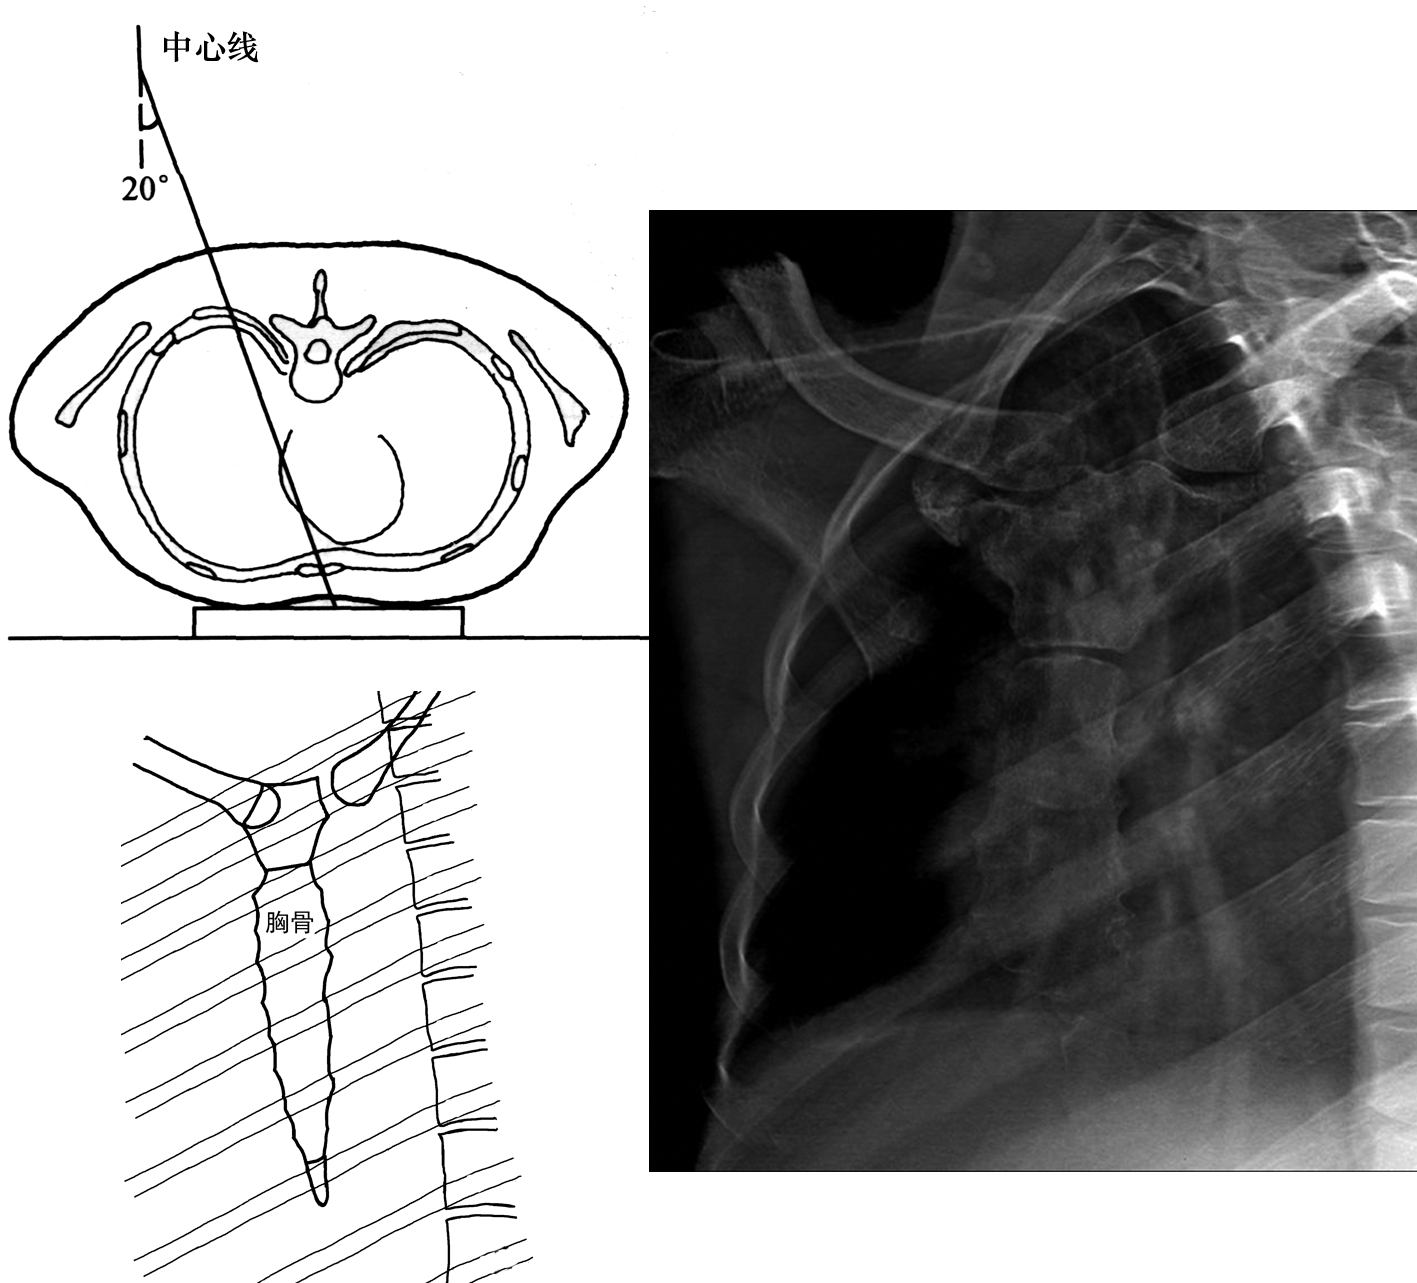 胸部x线摄影体位及临床意义